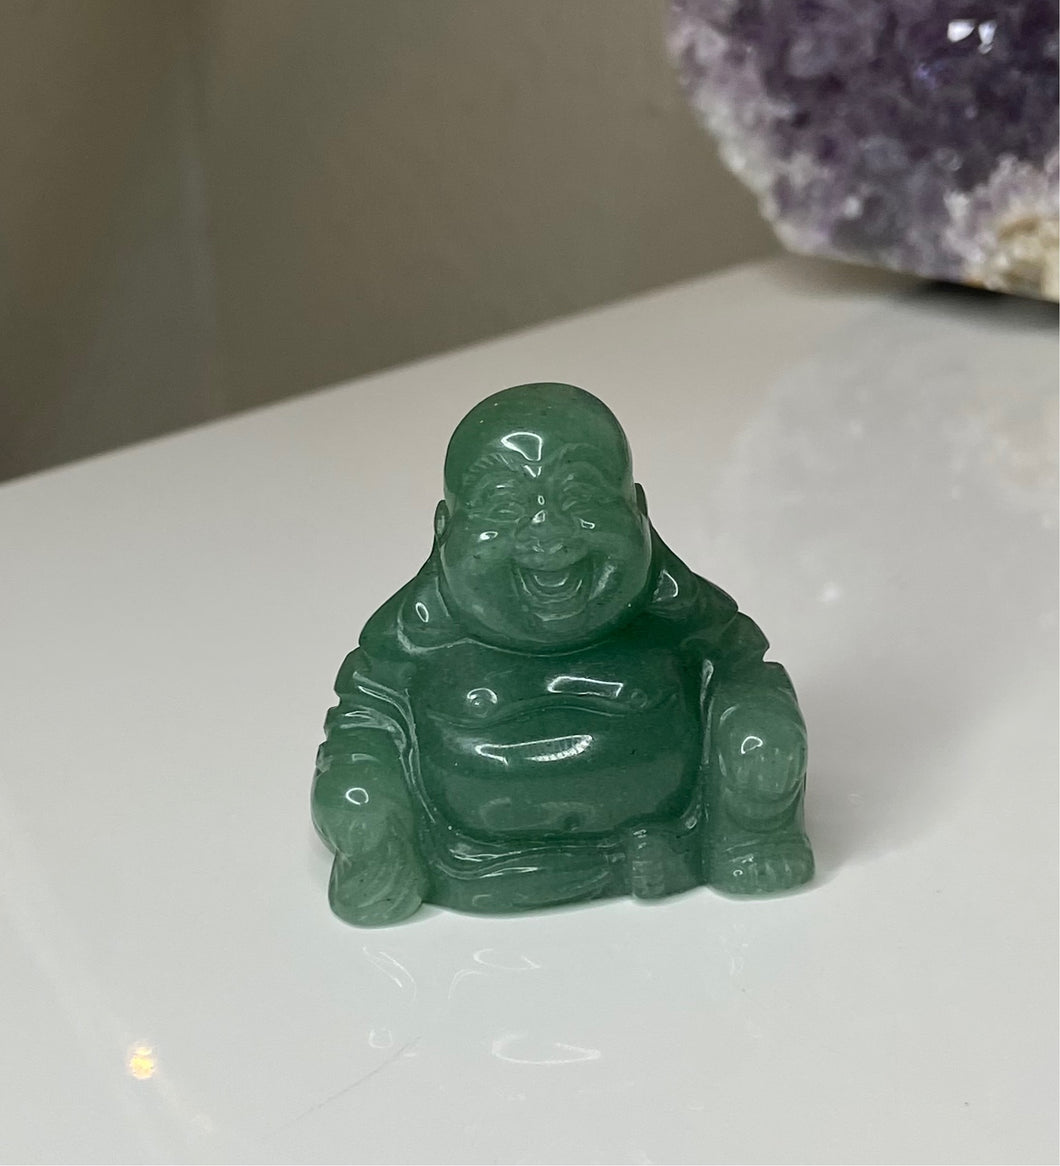 Green Aventurine Buddha